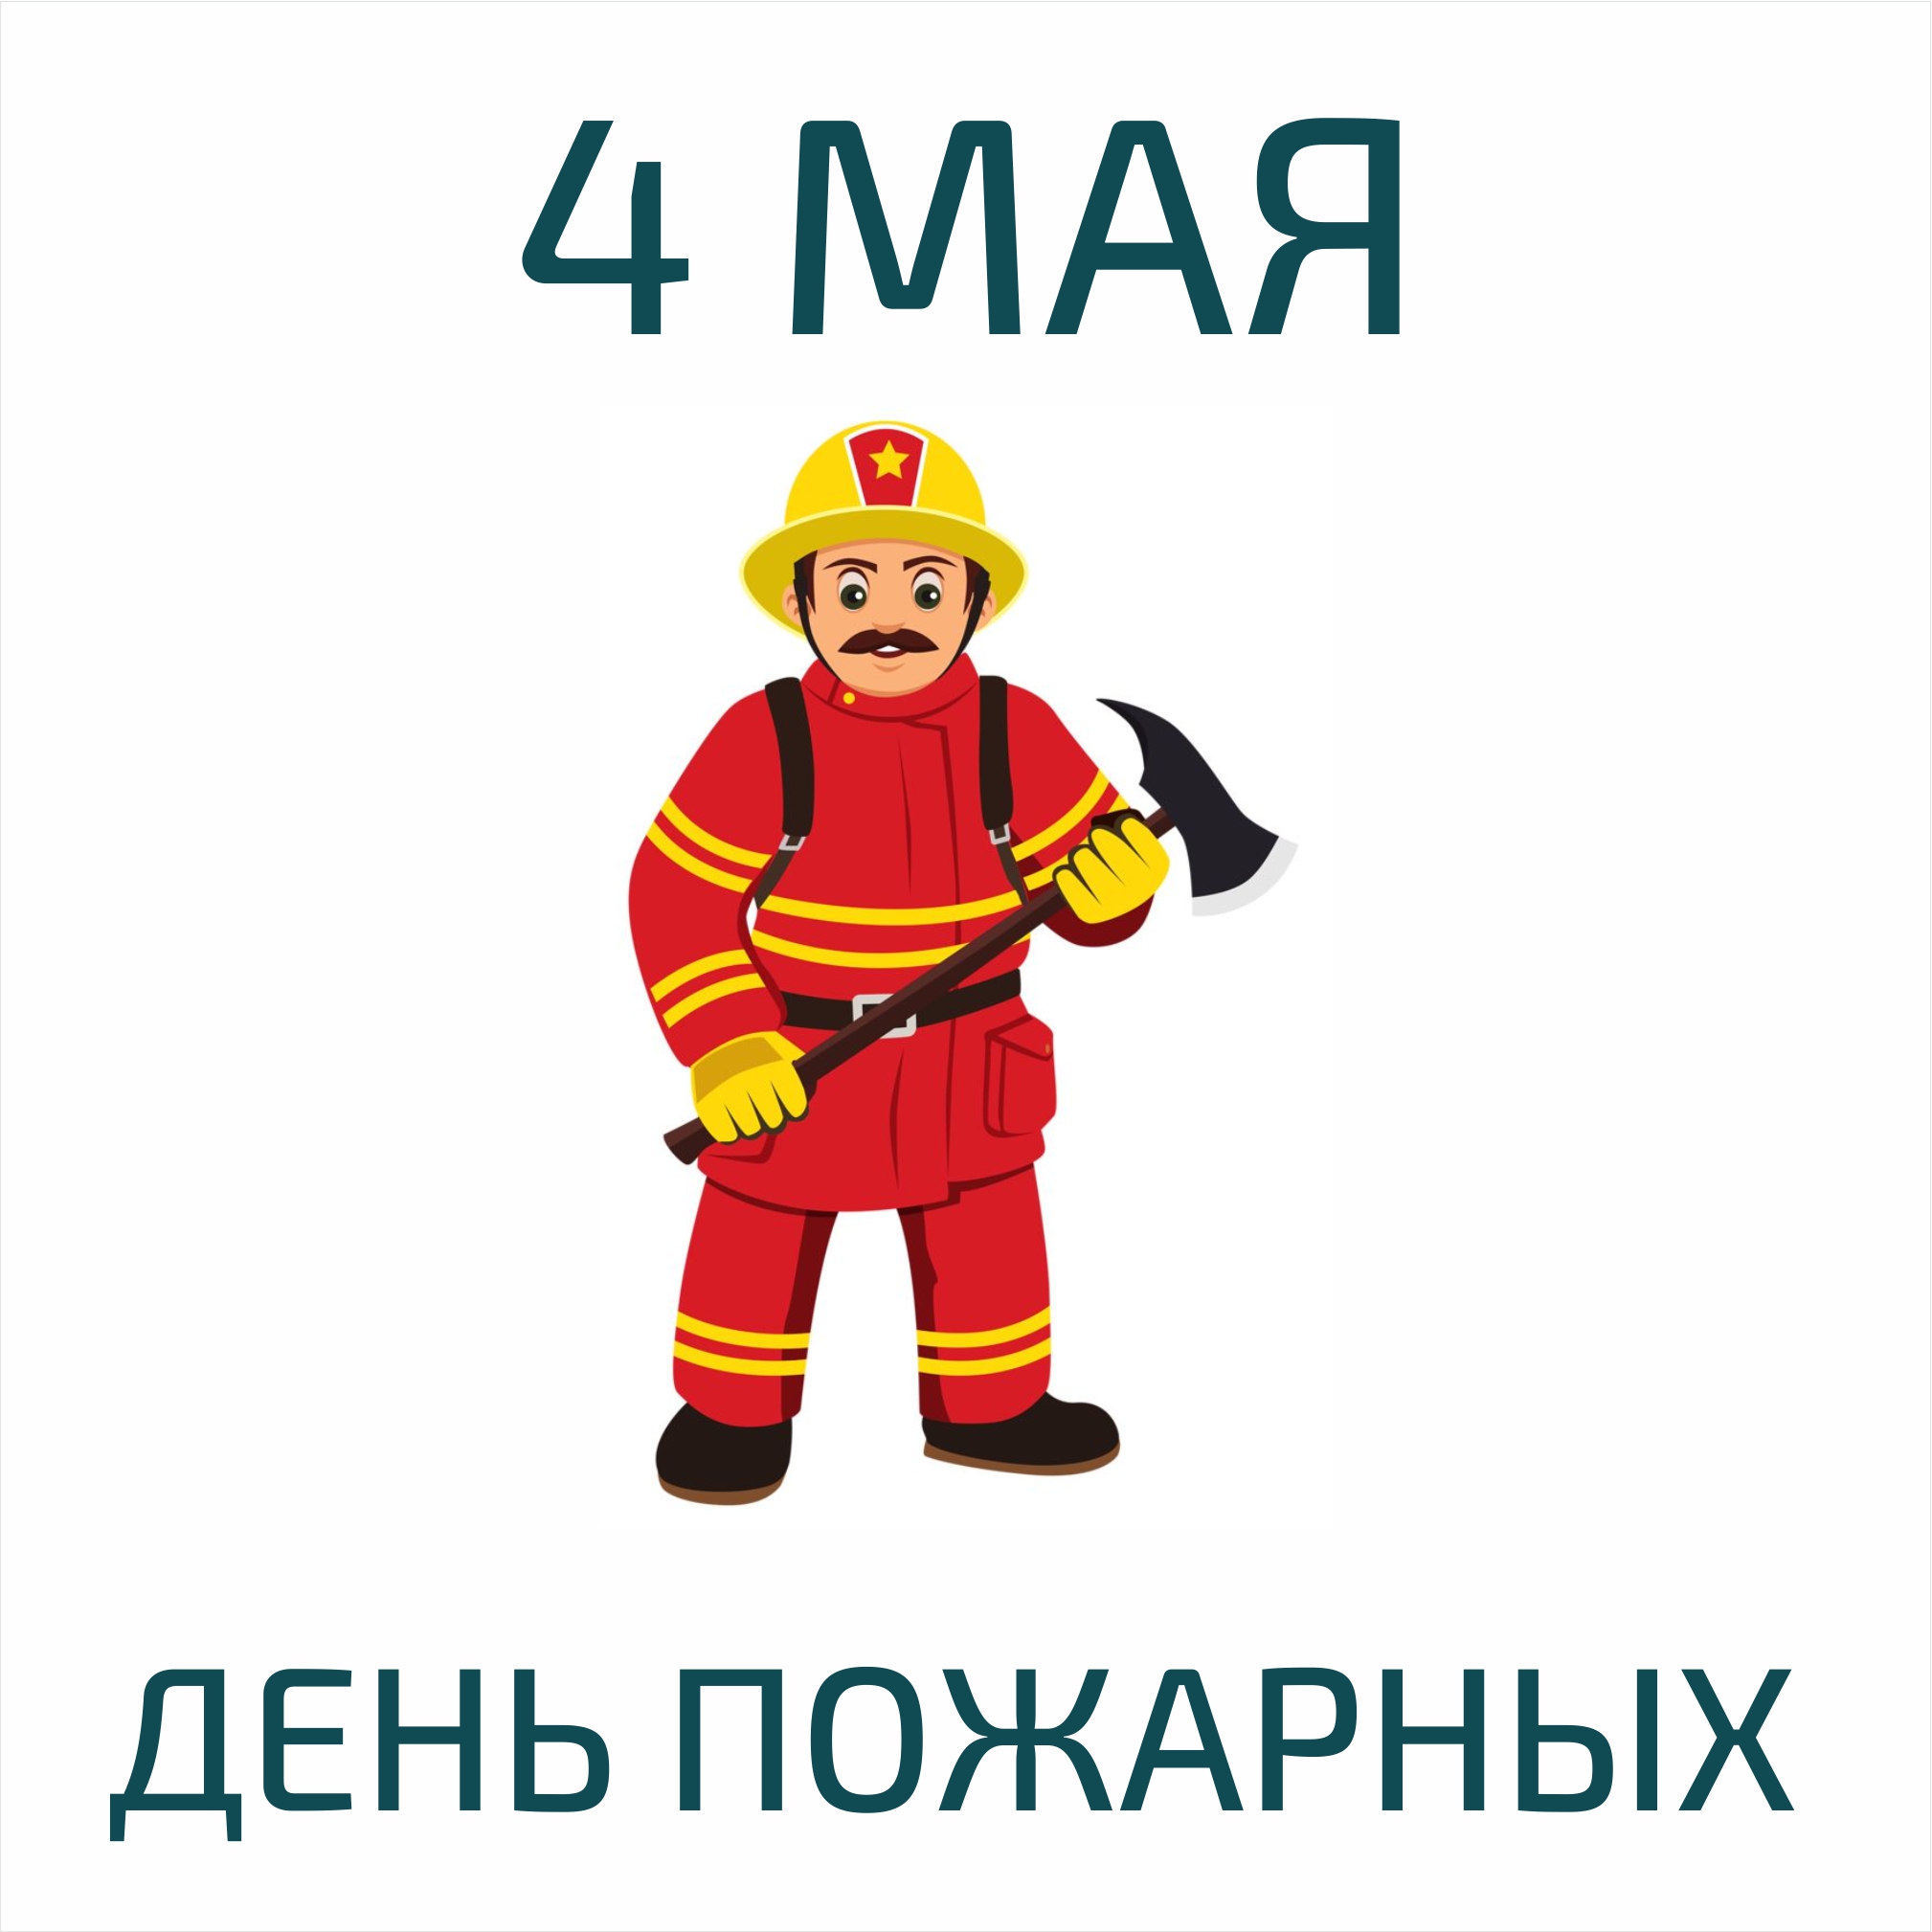 Пожарный мультяшный